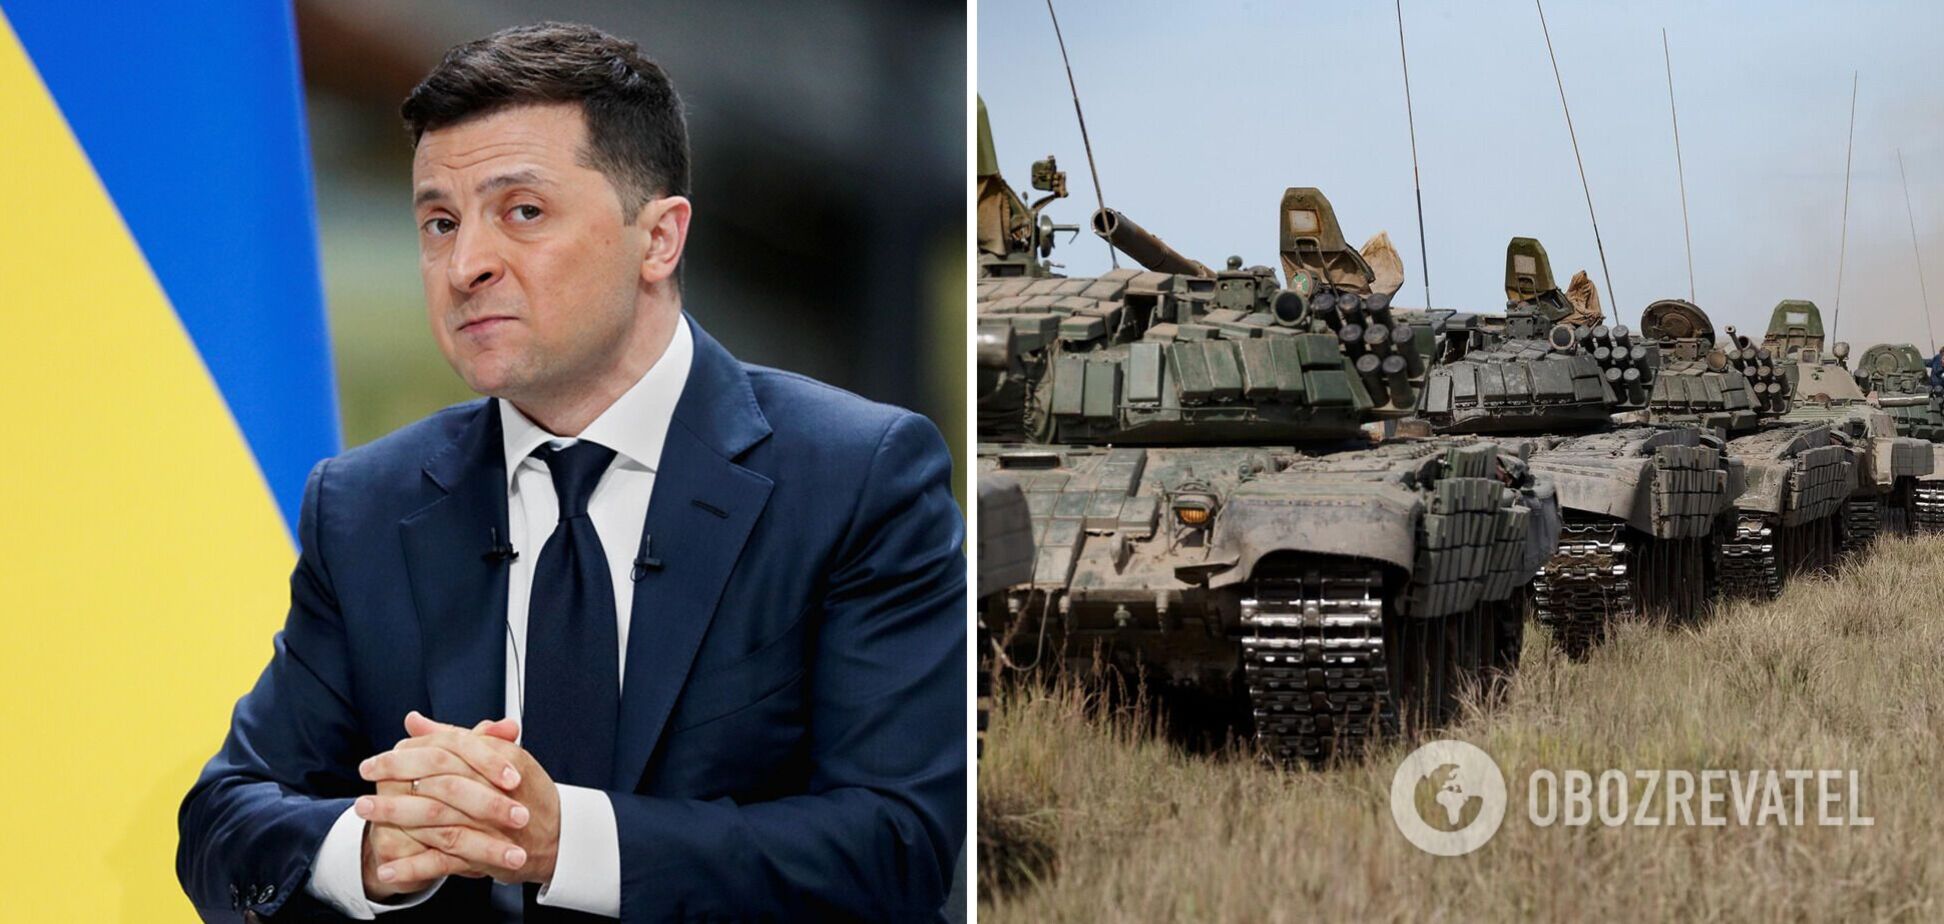 Зеленский заявил, что Украина не наблюдает отвода войск РФ от границ: мы только услышали об этом